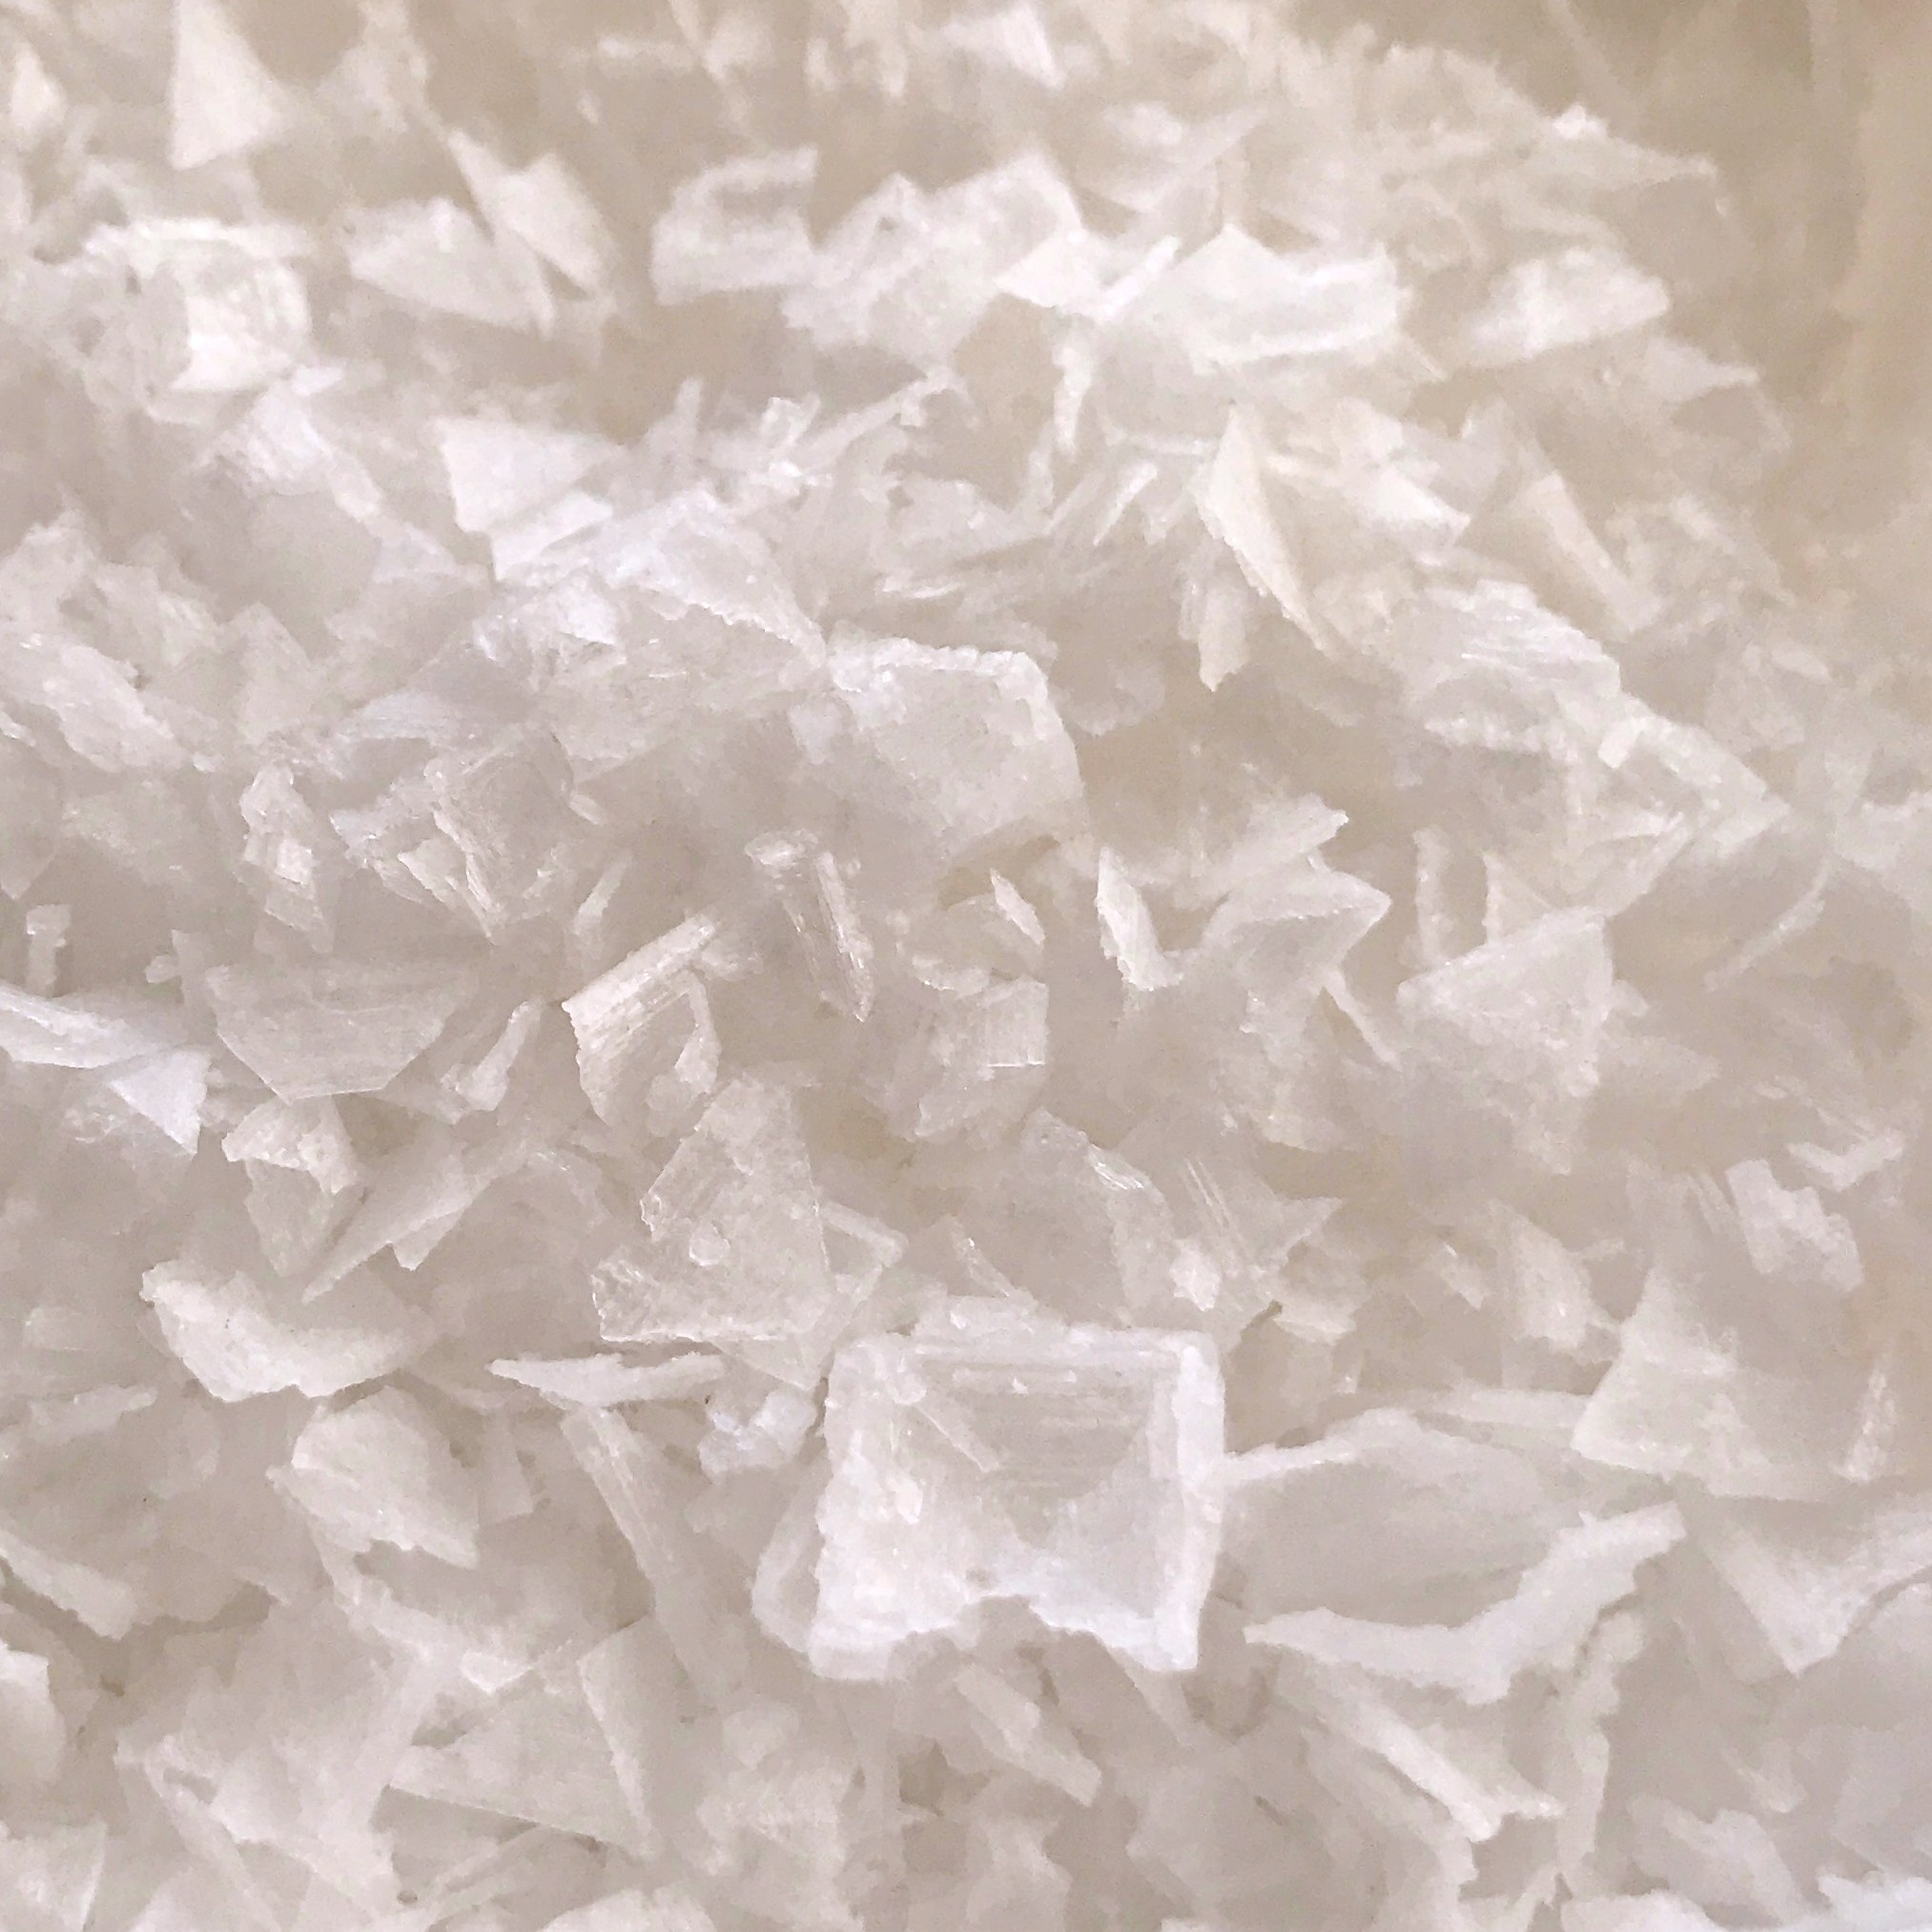 Pyramidal Flakes Salt